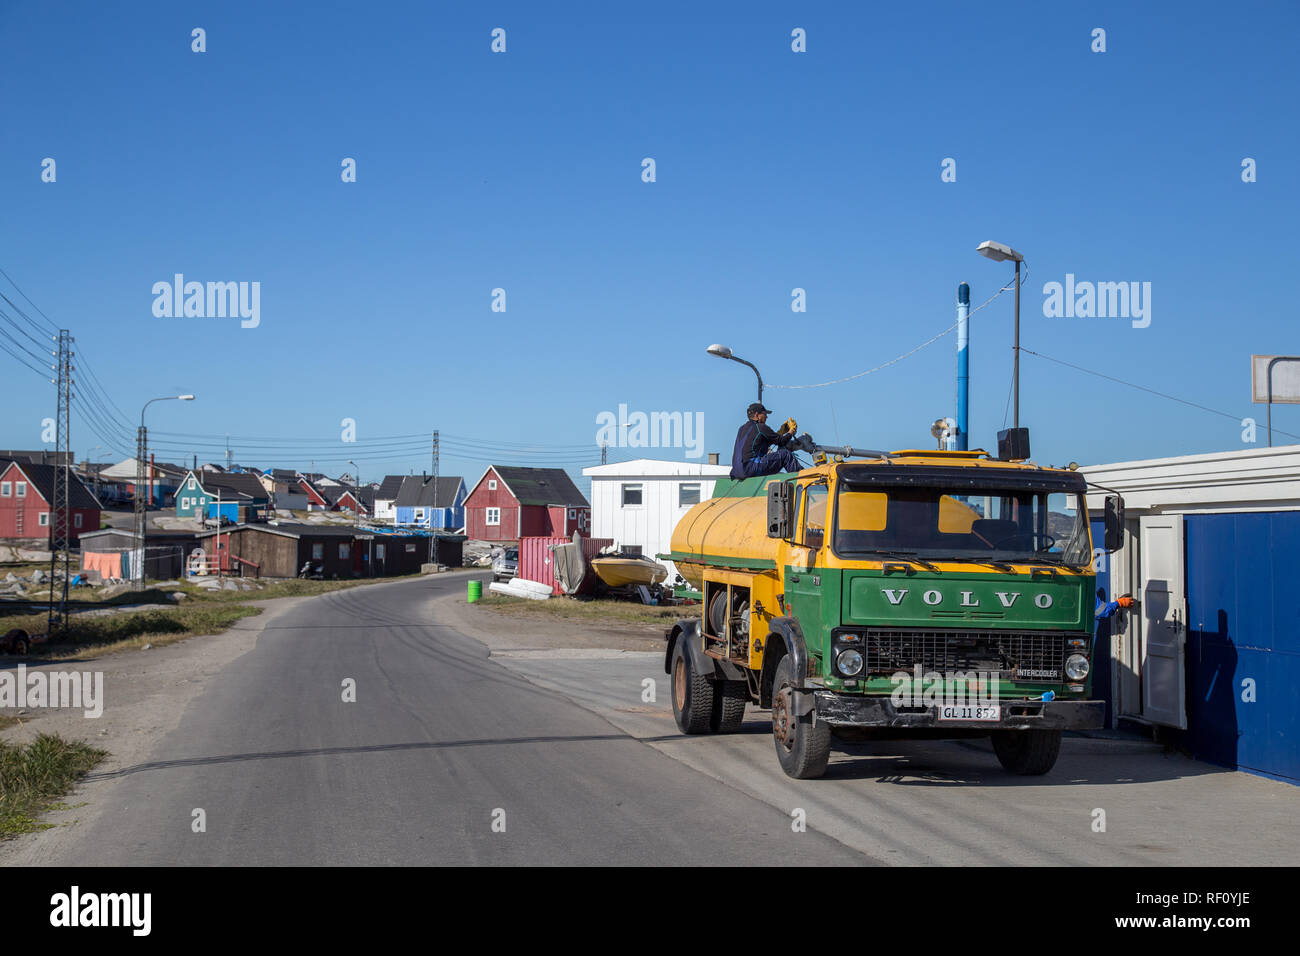 Fuel Truck in Qeqertarsuaq, Greenland Stock Photo